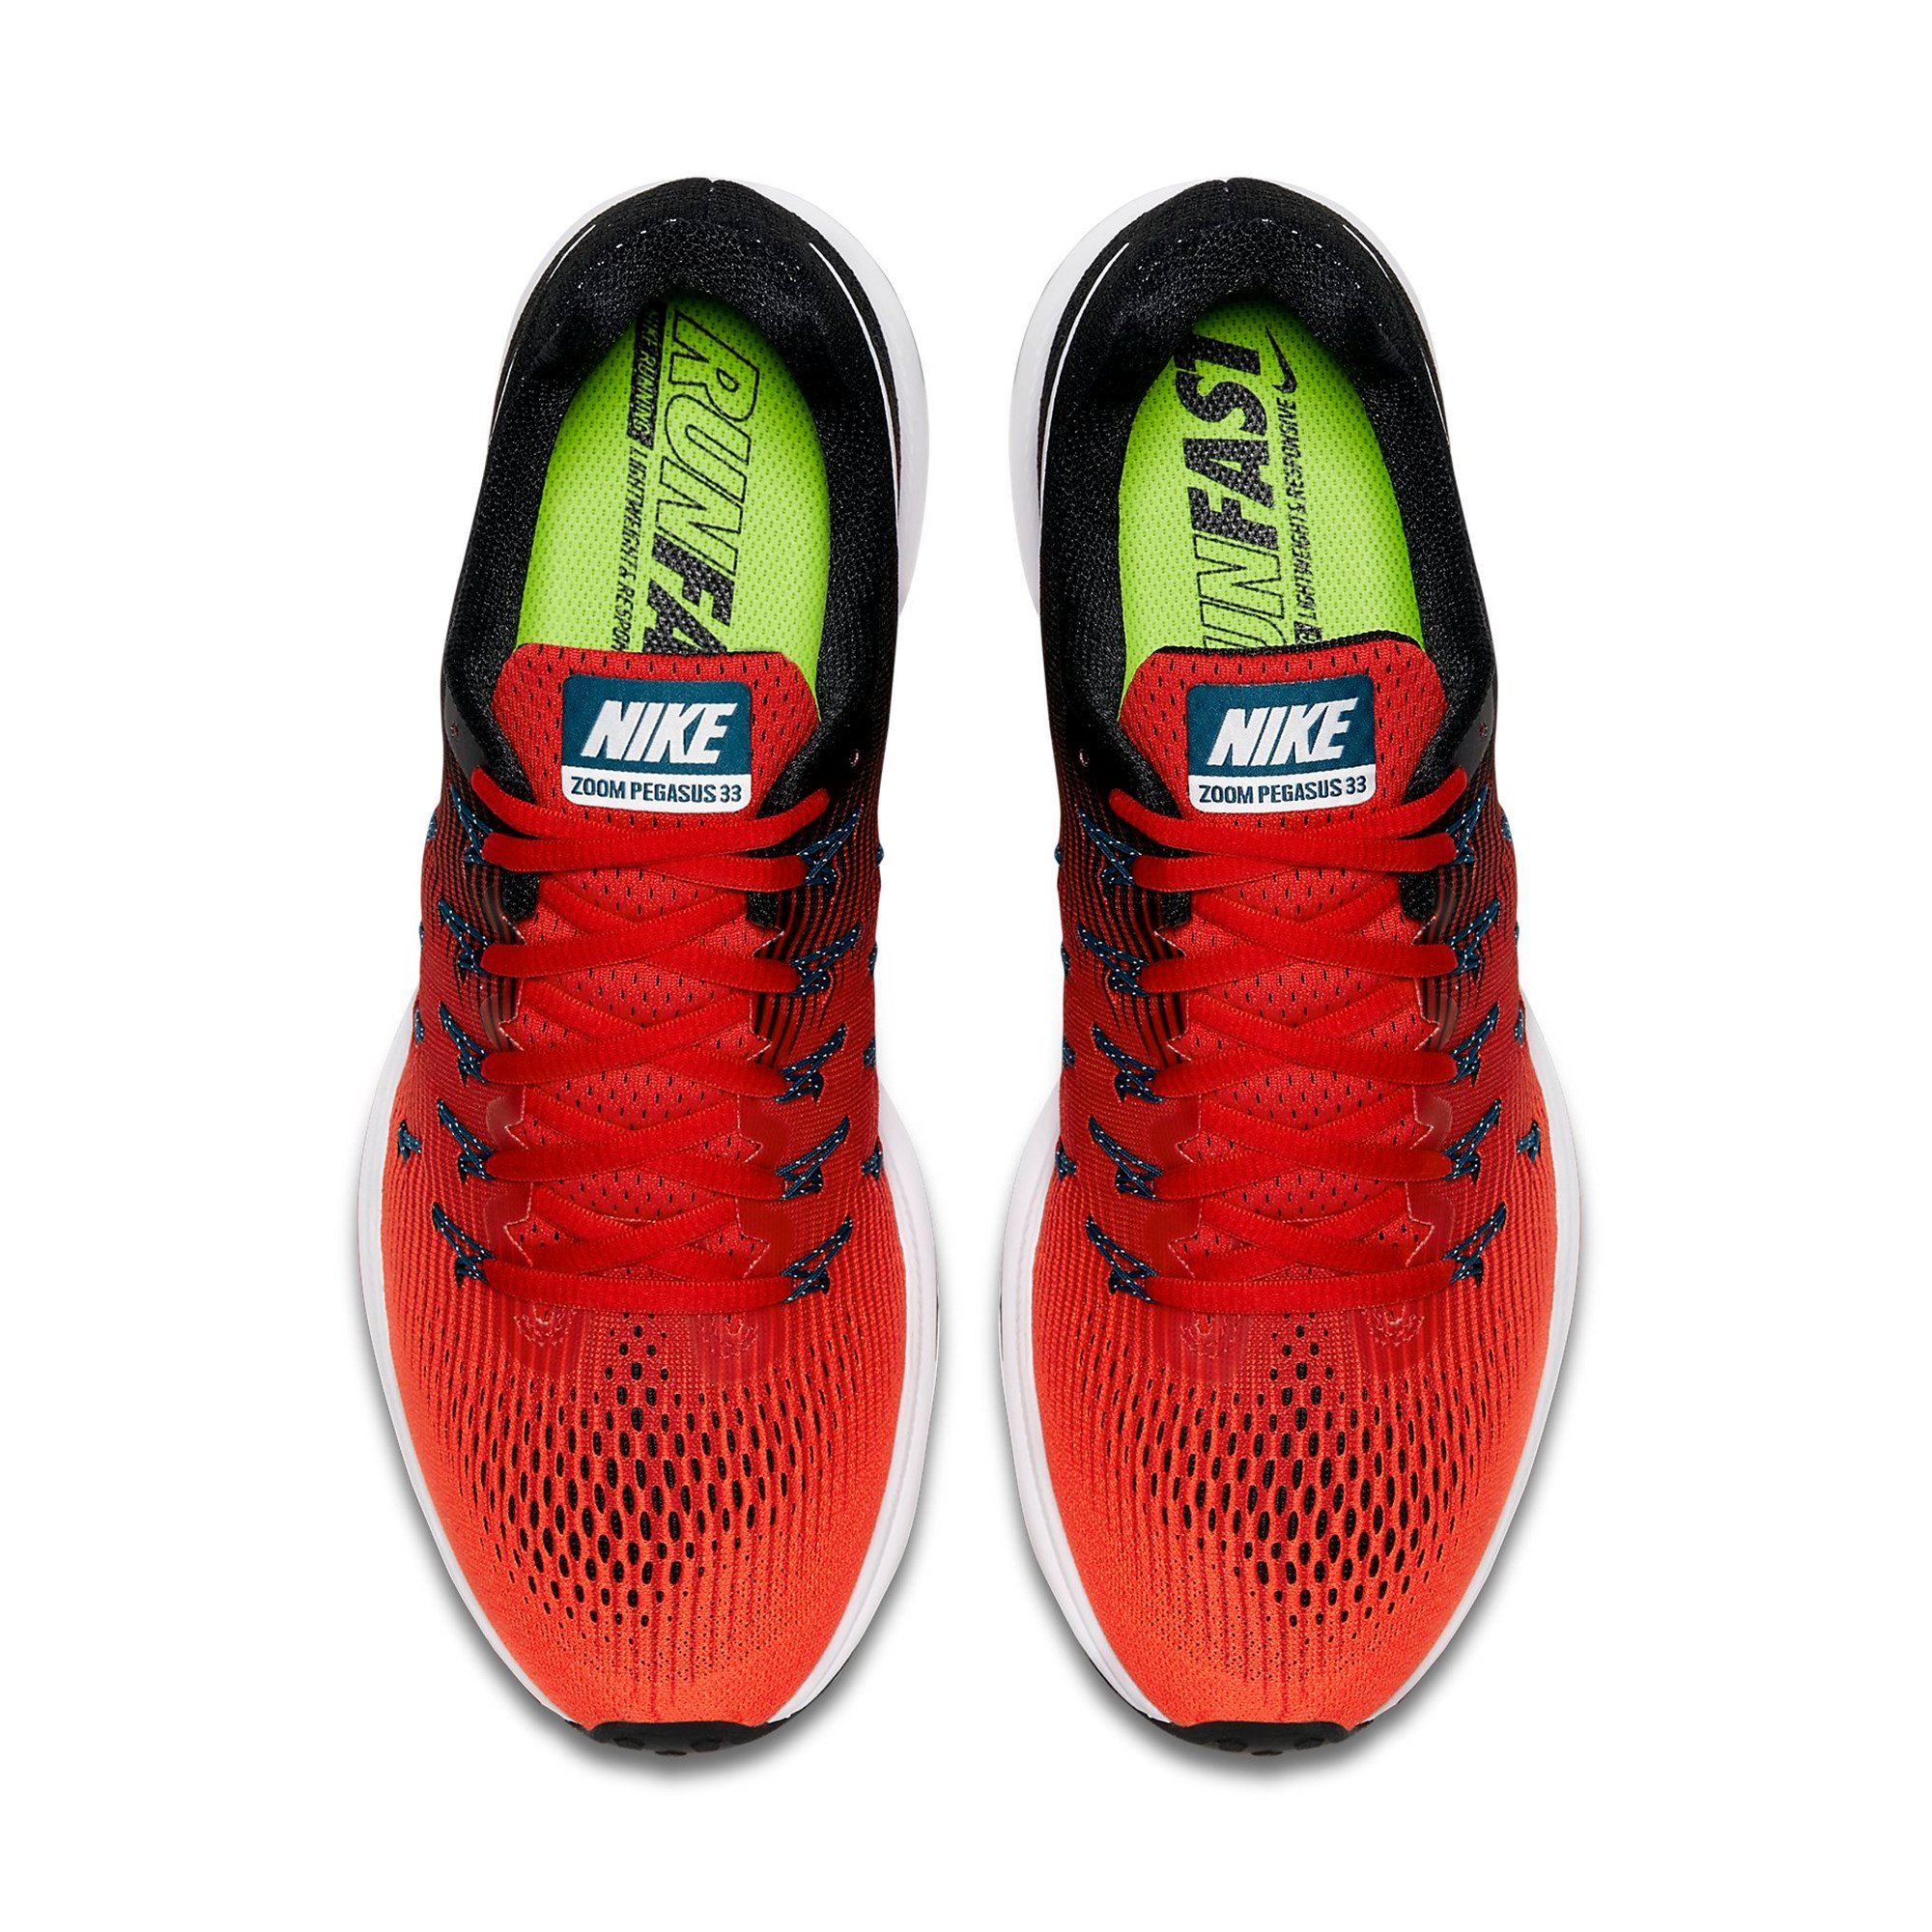 Nike Air Zoom Pegasus 33 Erkek Spor Ayakkabı Ürün kodu: 831352-602 |  Etichet Sport